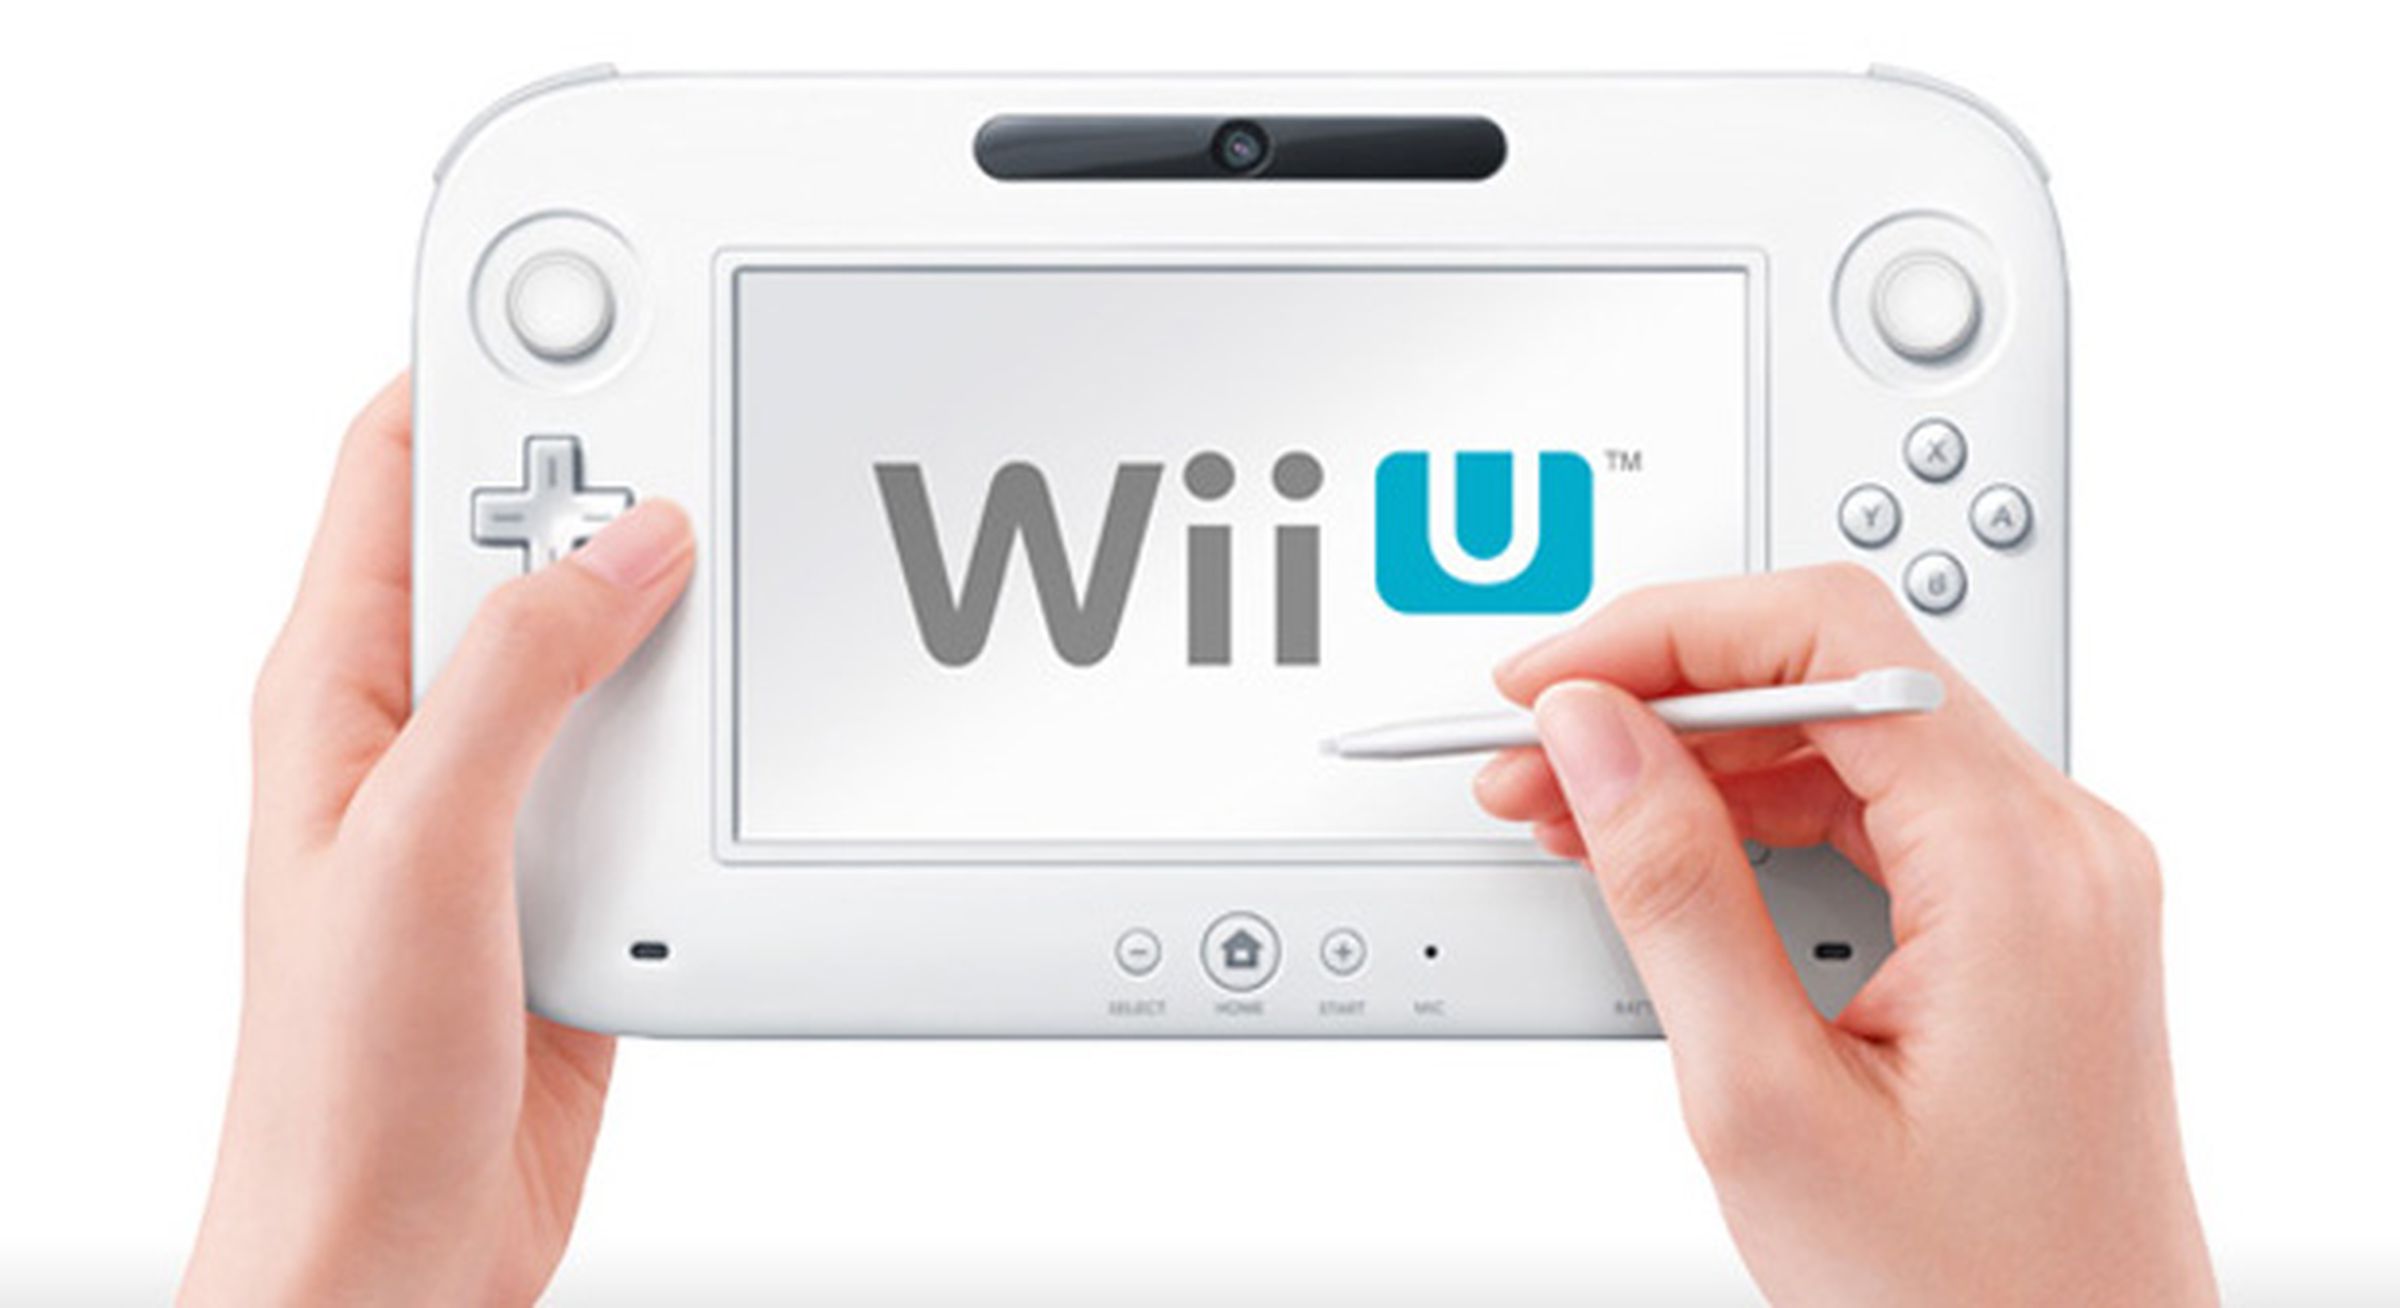 Nintendo Wii U pictures